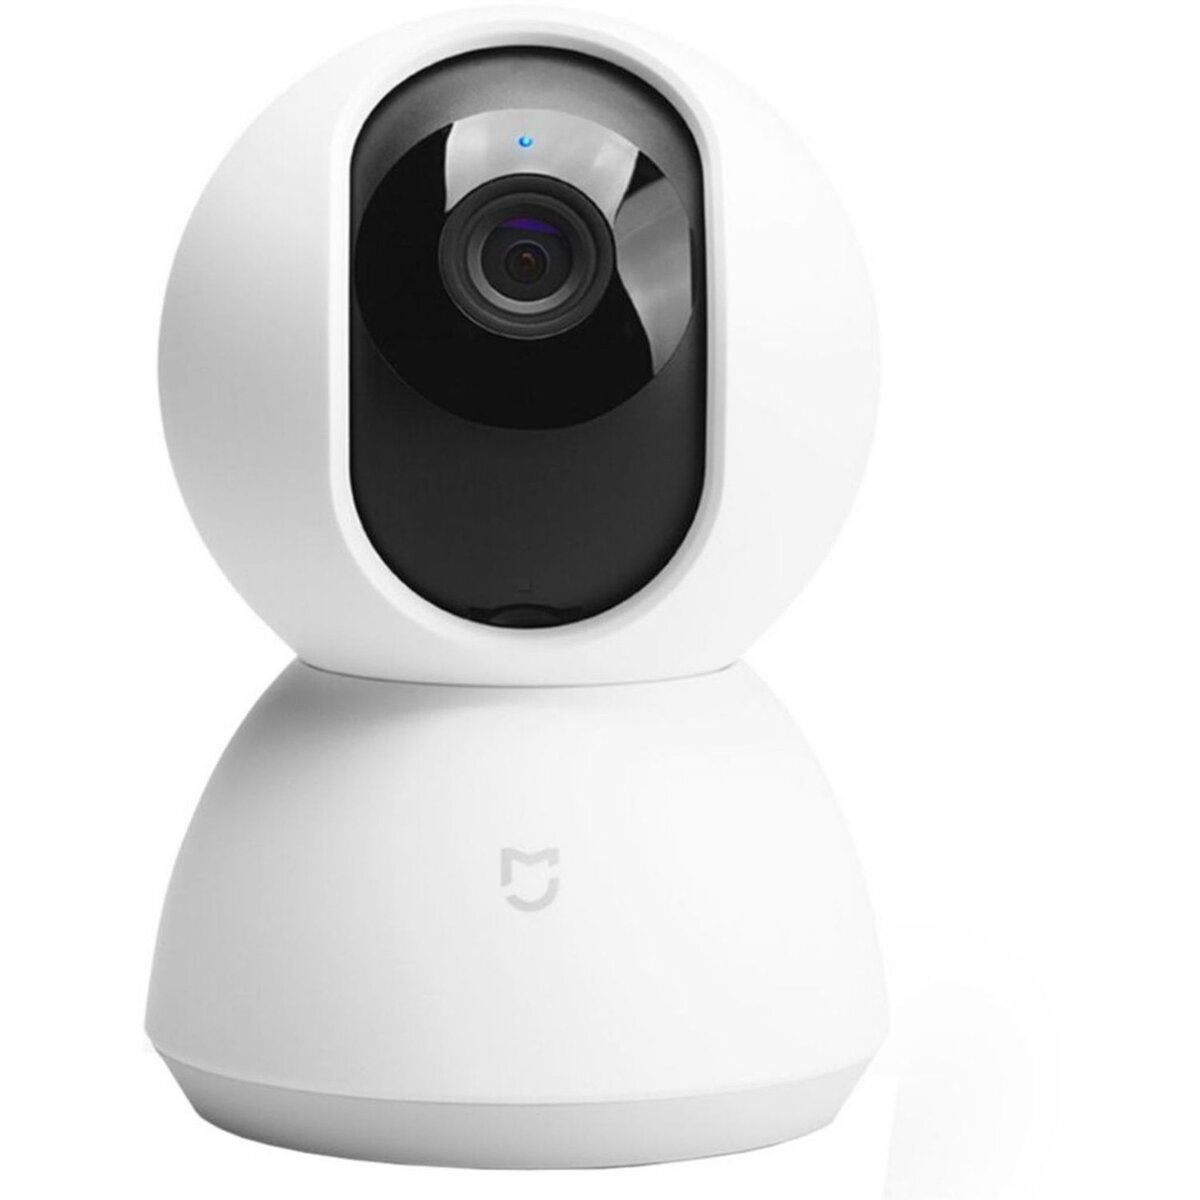 Caméras de Surveillance XIAOMI à prix pas cher